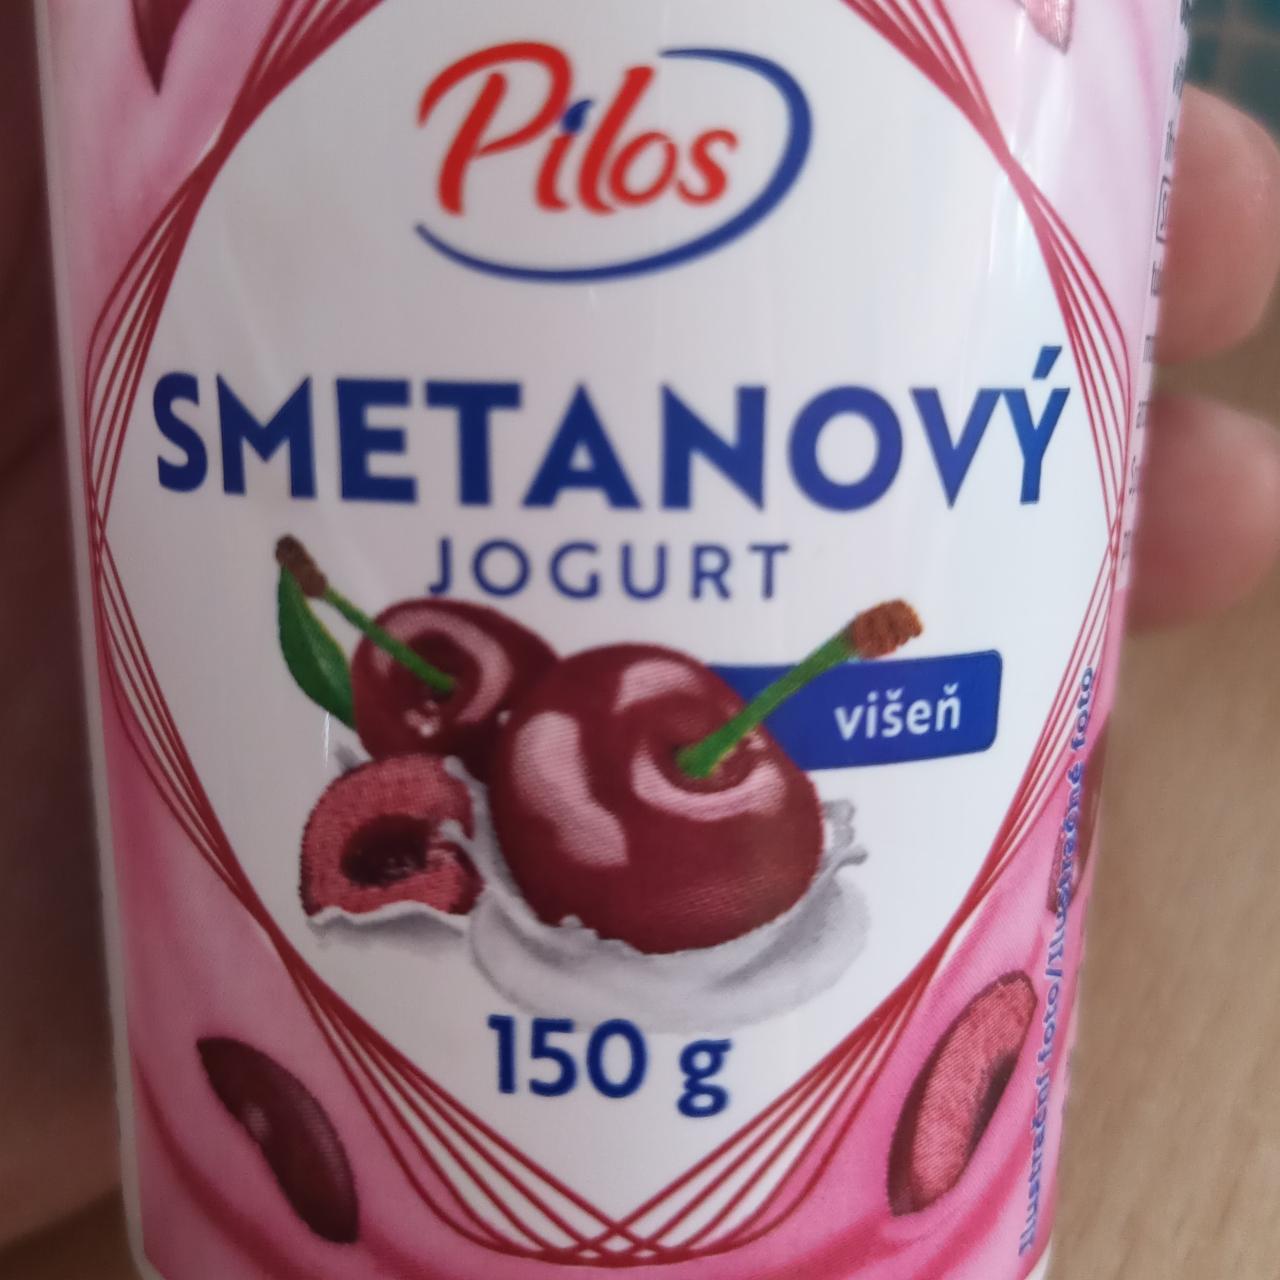 Fotografie - Smetanový jogurt višeň Pilos